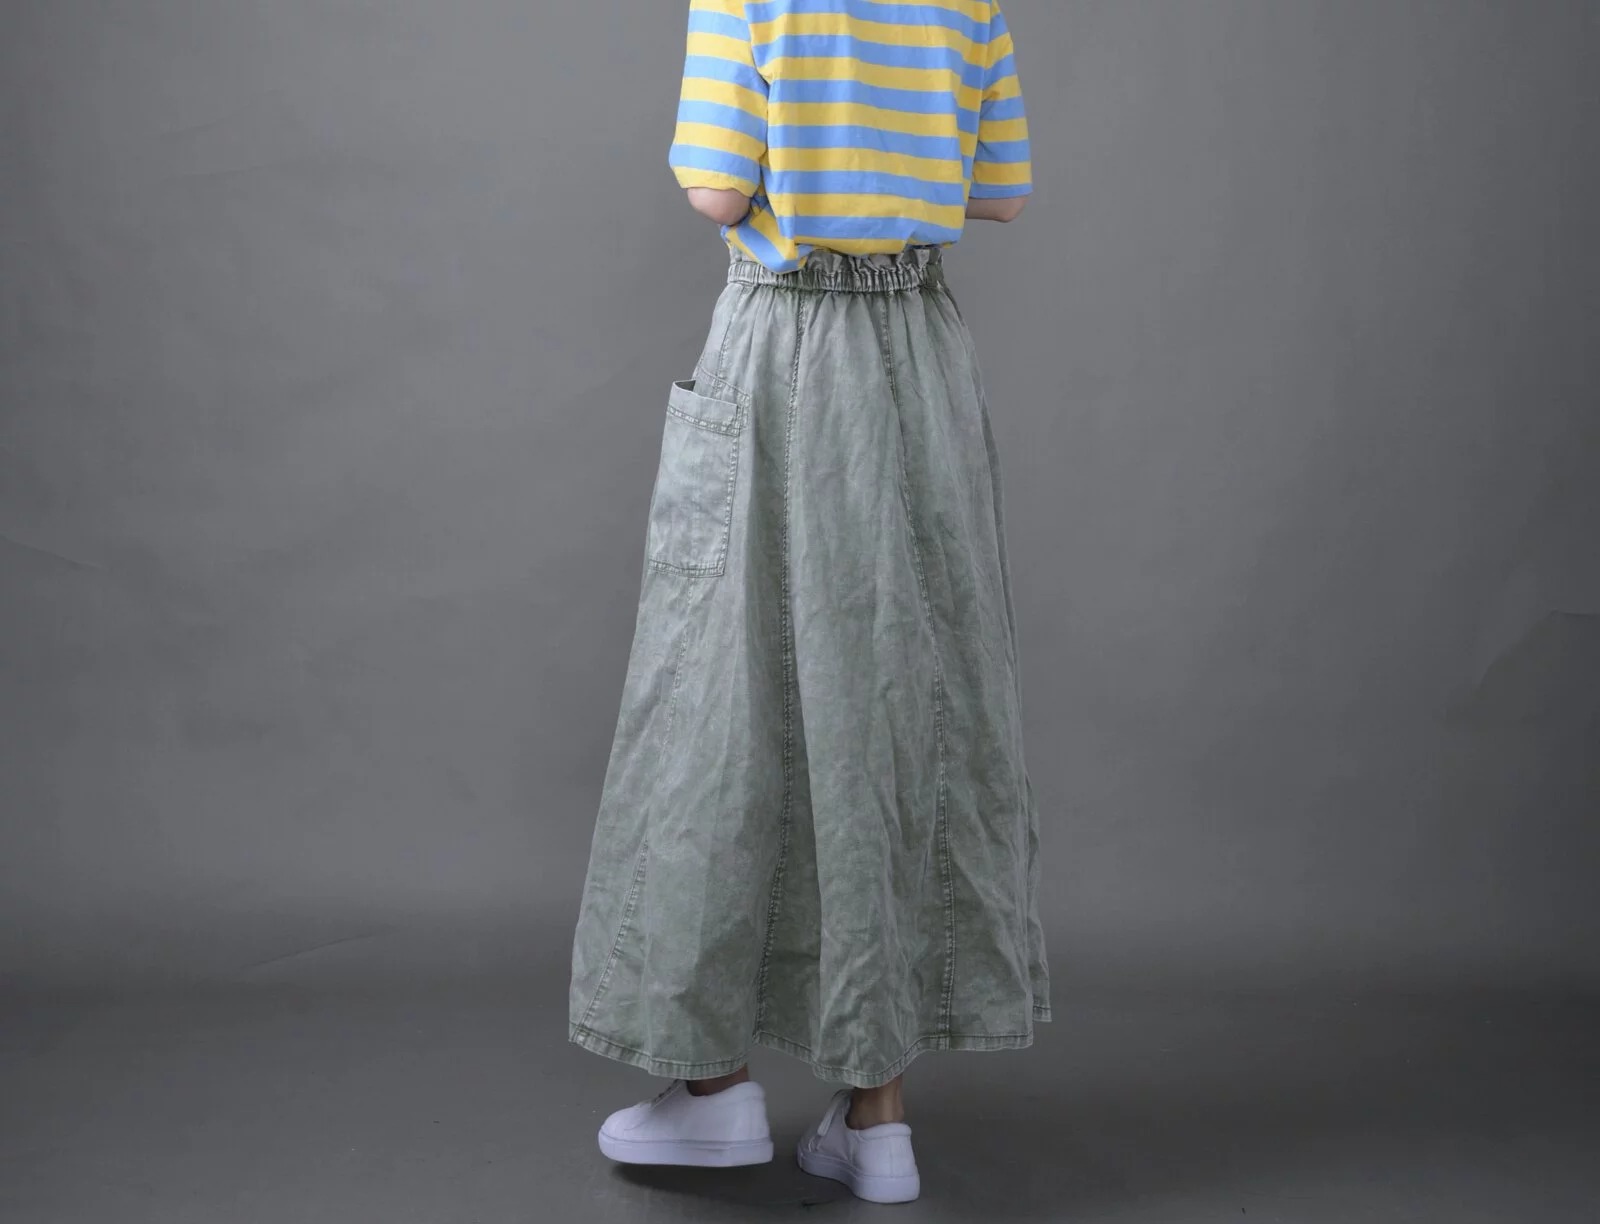 日本品牌 洗舊棉質長裙 三色 size